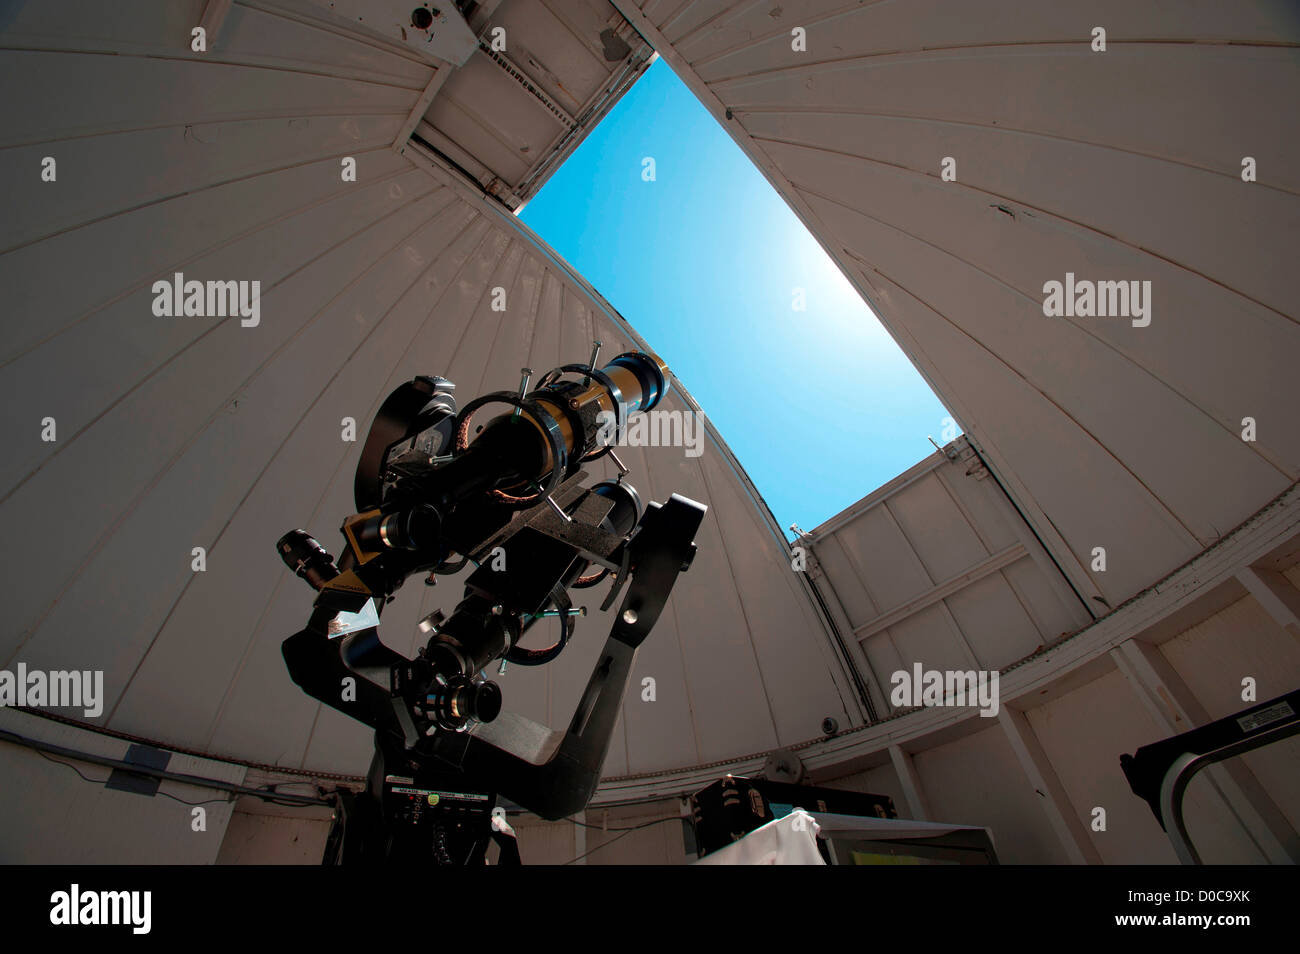 Un petit télescope solaire est dirigée vers le soleil à l'Observatoire National de Kitt Peak, en Arizona Banque D'Images